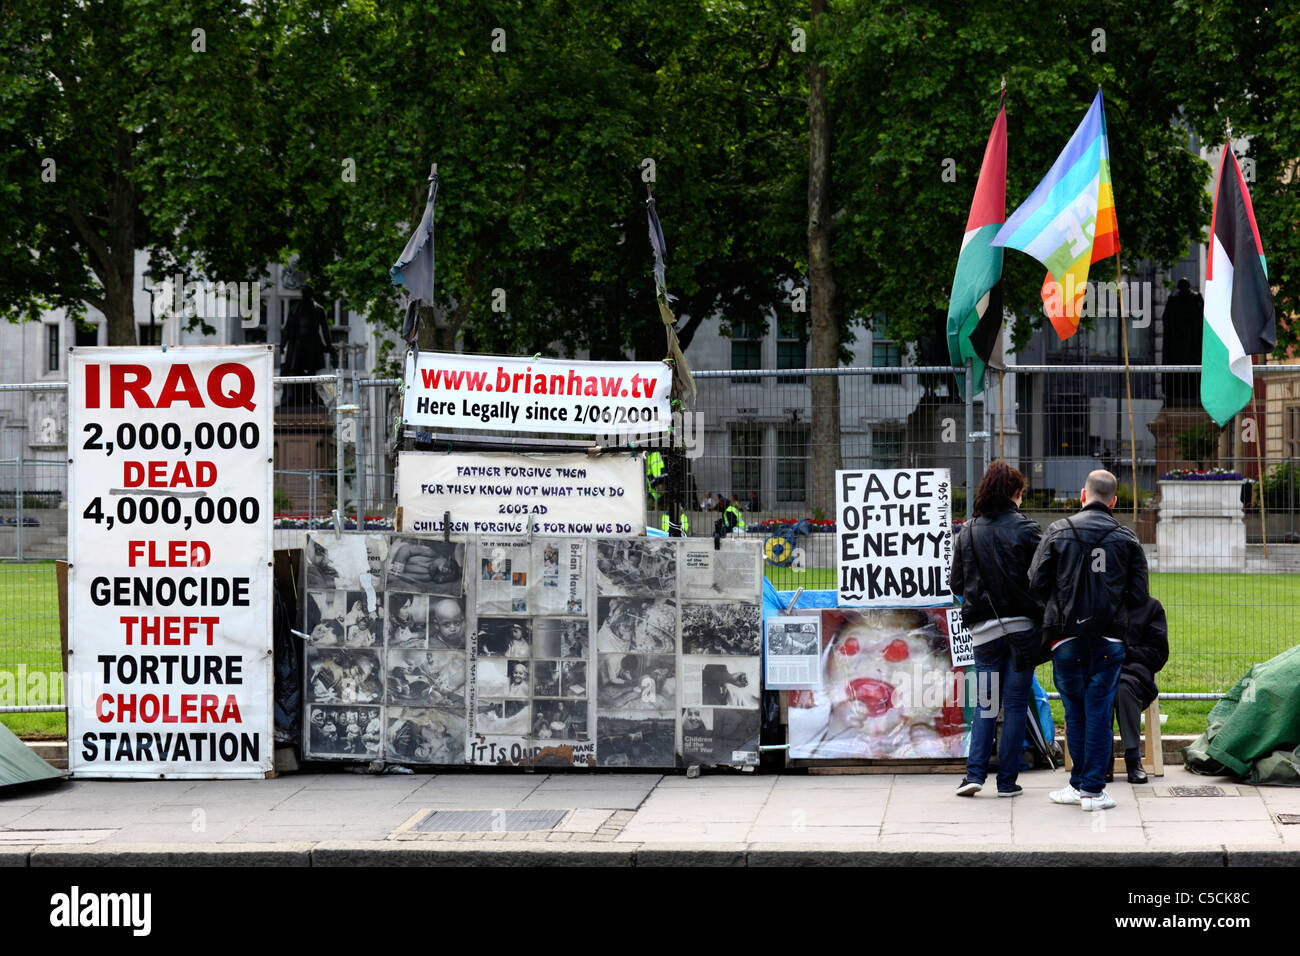 Vue de la campagne de paix de Parliament Square / camp de paix de Brian Haw, Parliament Square, Westminster, Londres, Royaume-Uni Banque D'Images